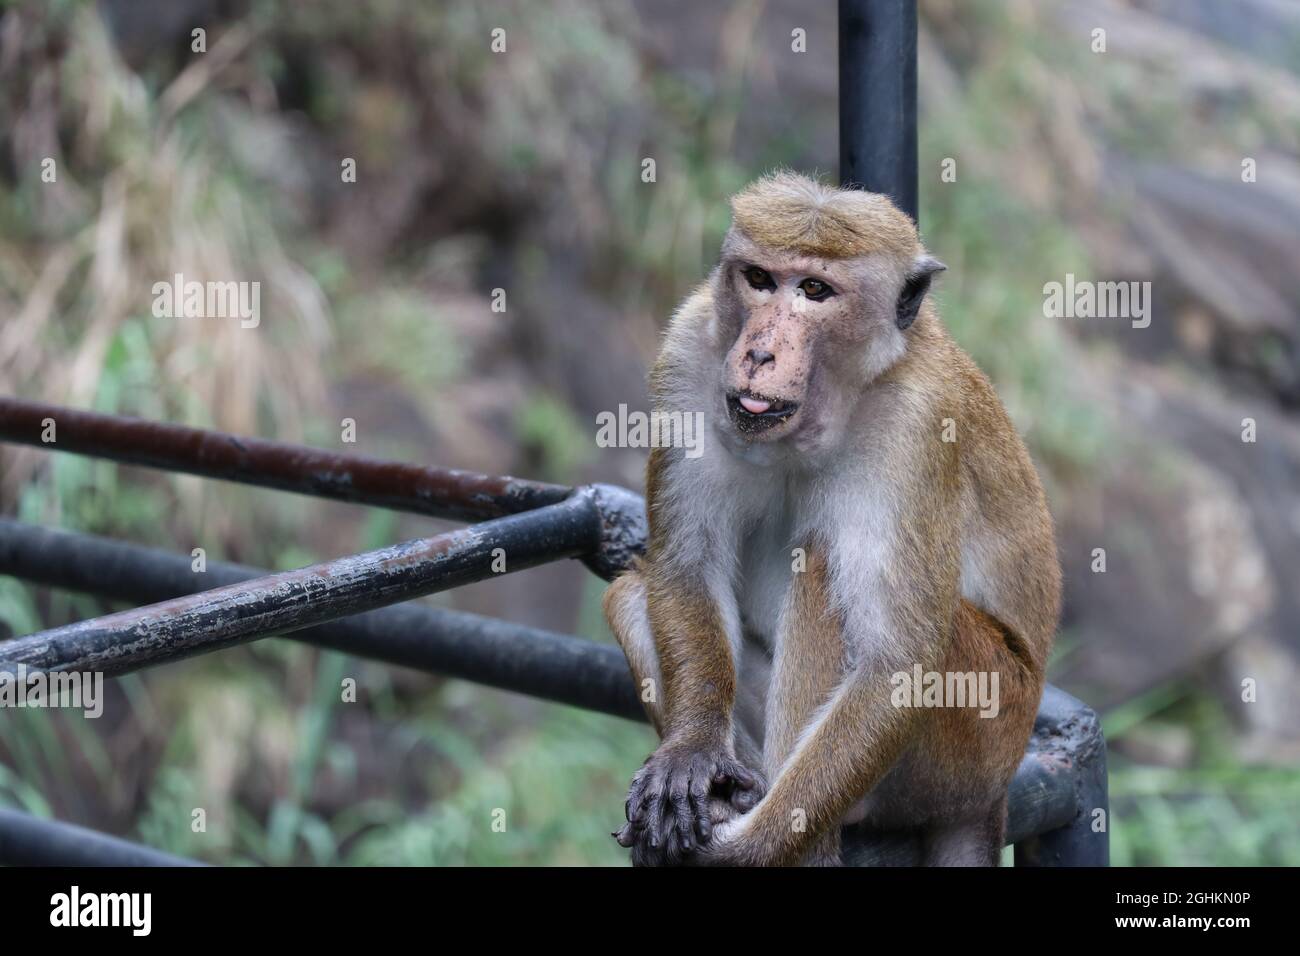 Le singe attend quelque chose à manger. Banque D'Images